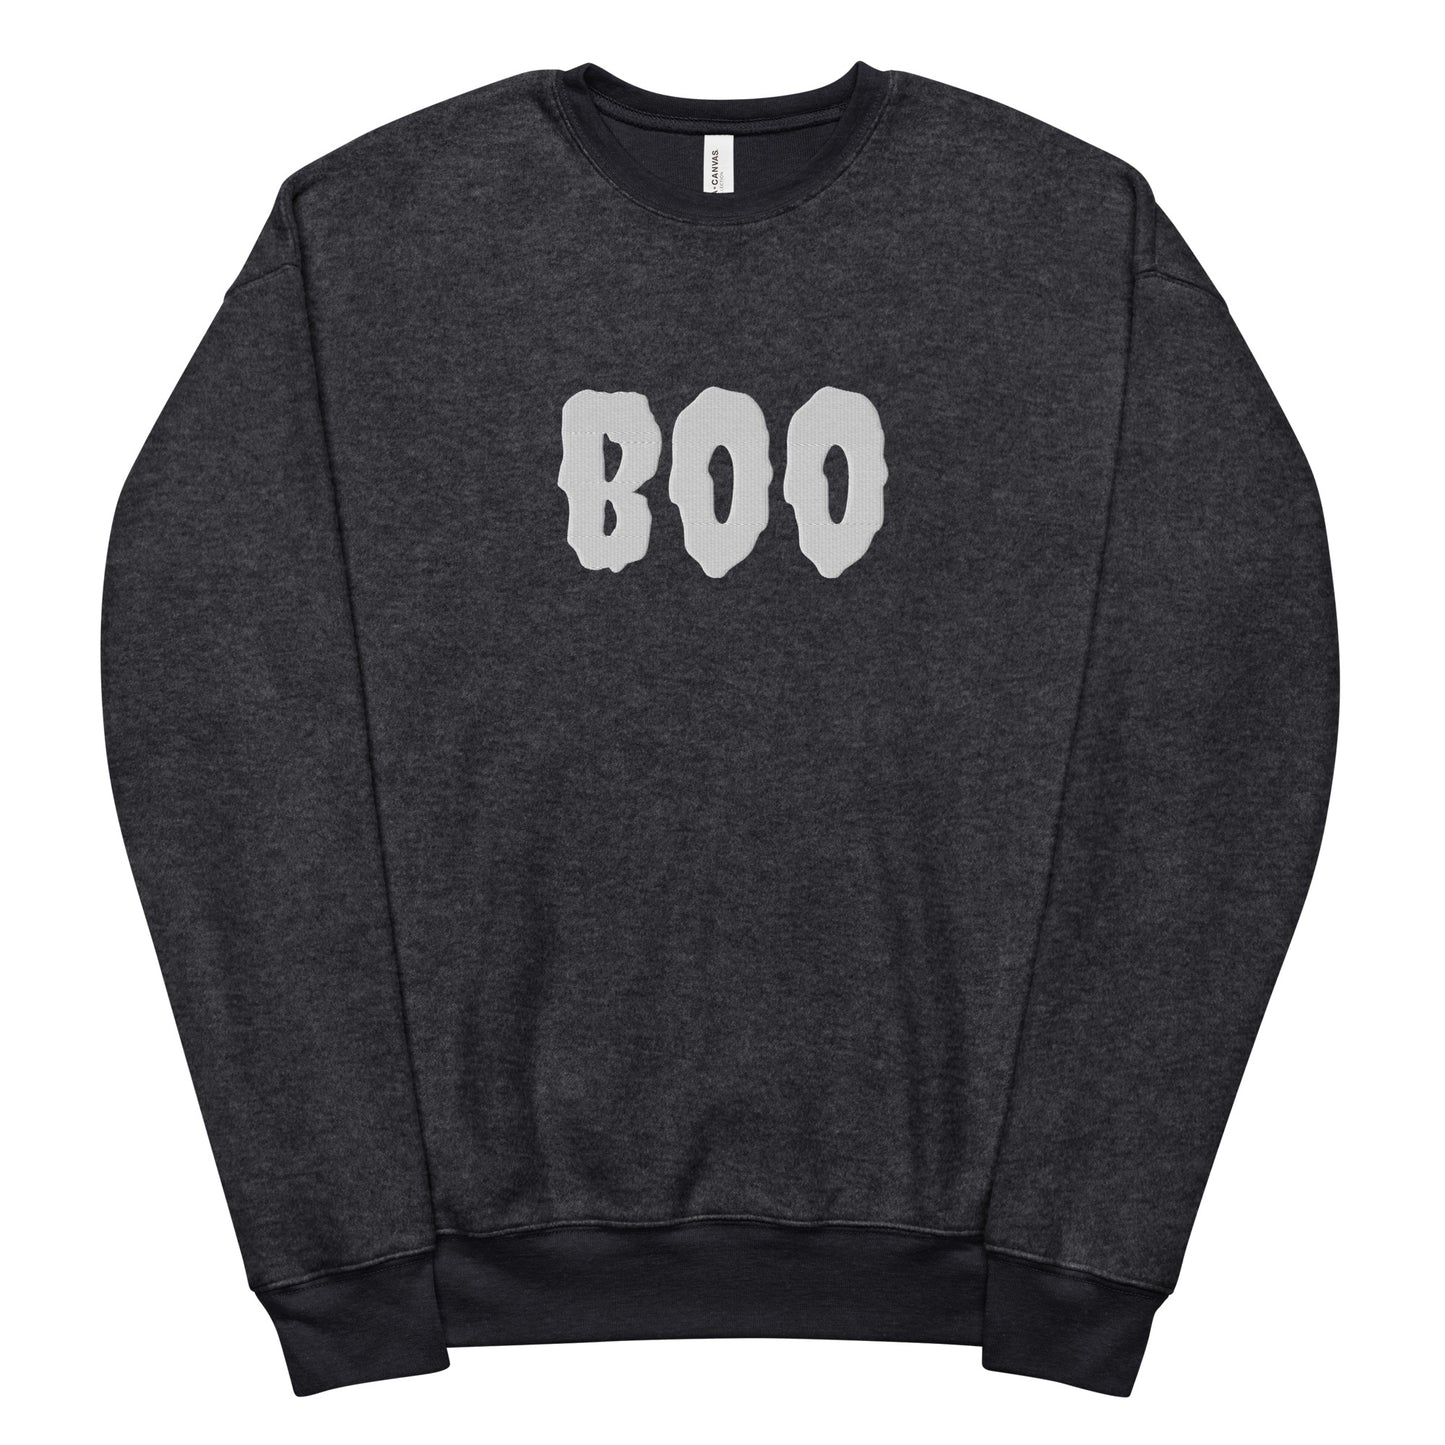 Boo Fleece Sweatshirt